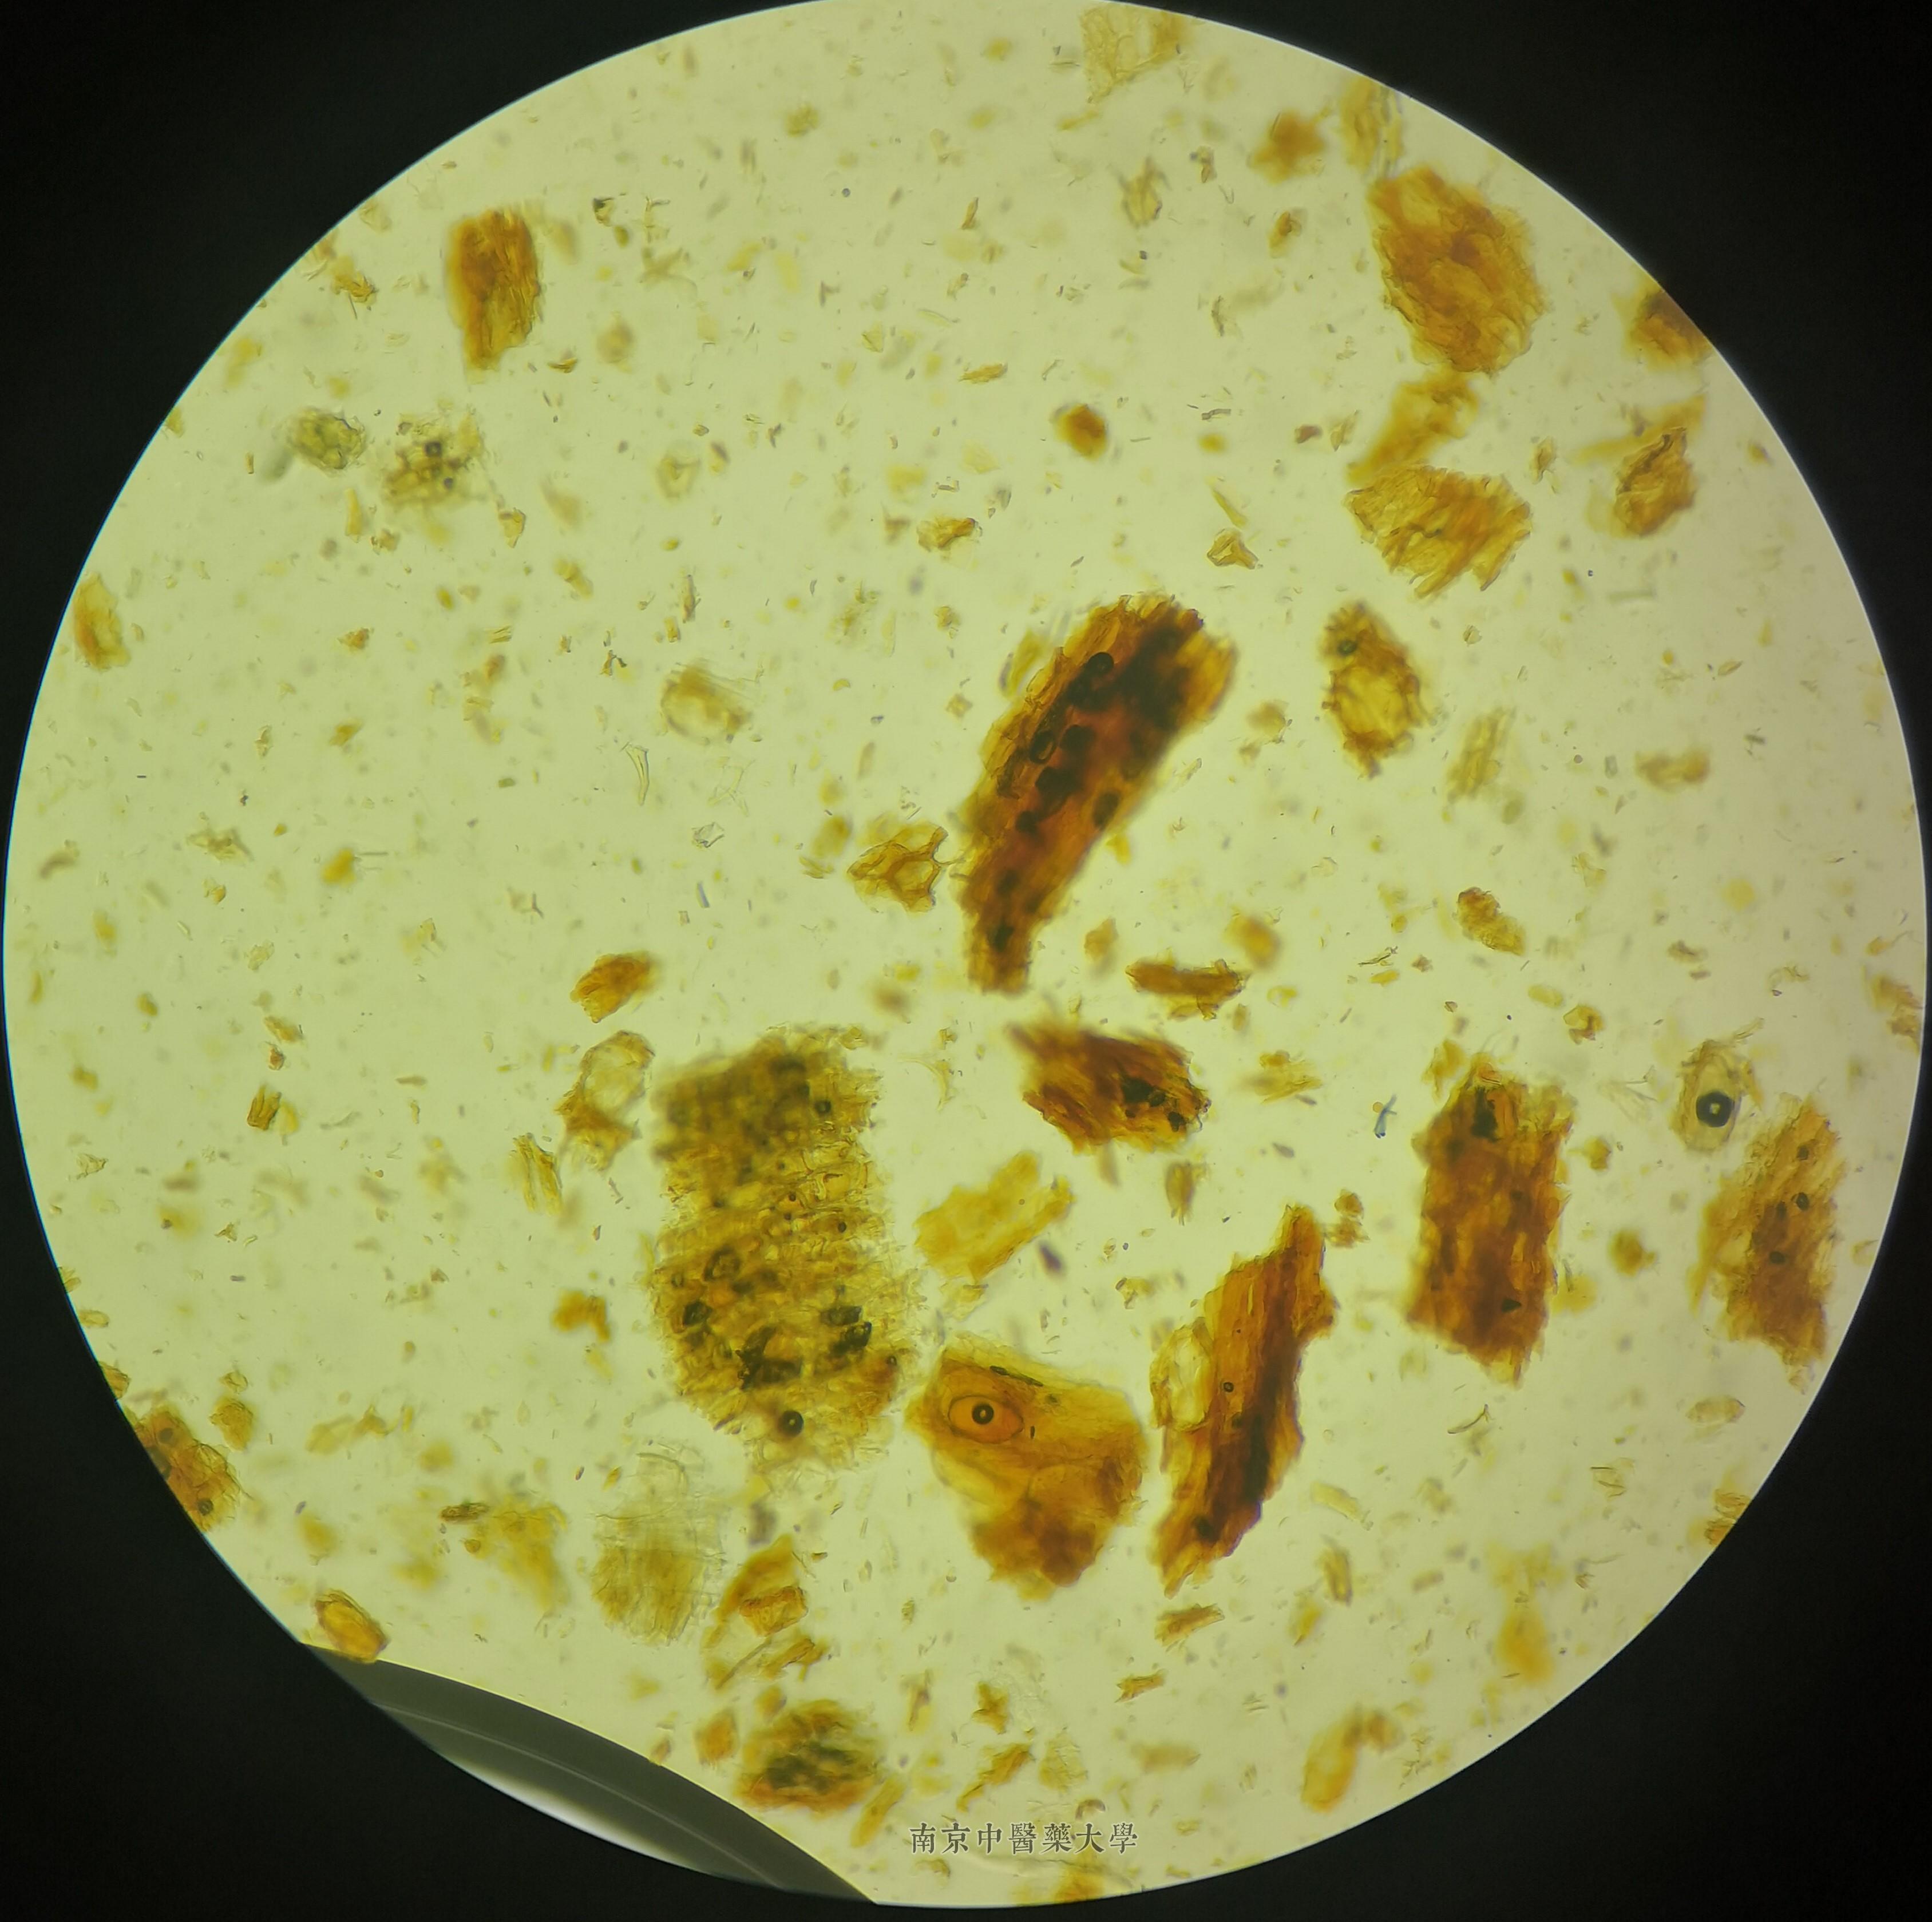 厚朴粉末石细胞显微图图片